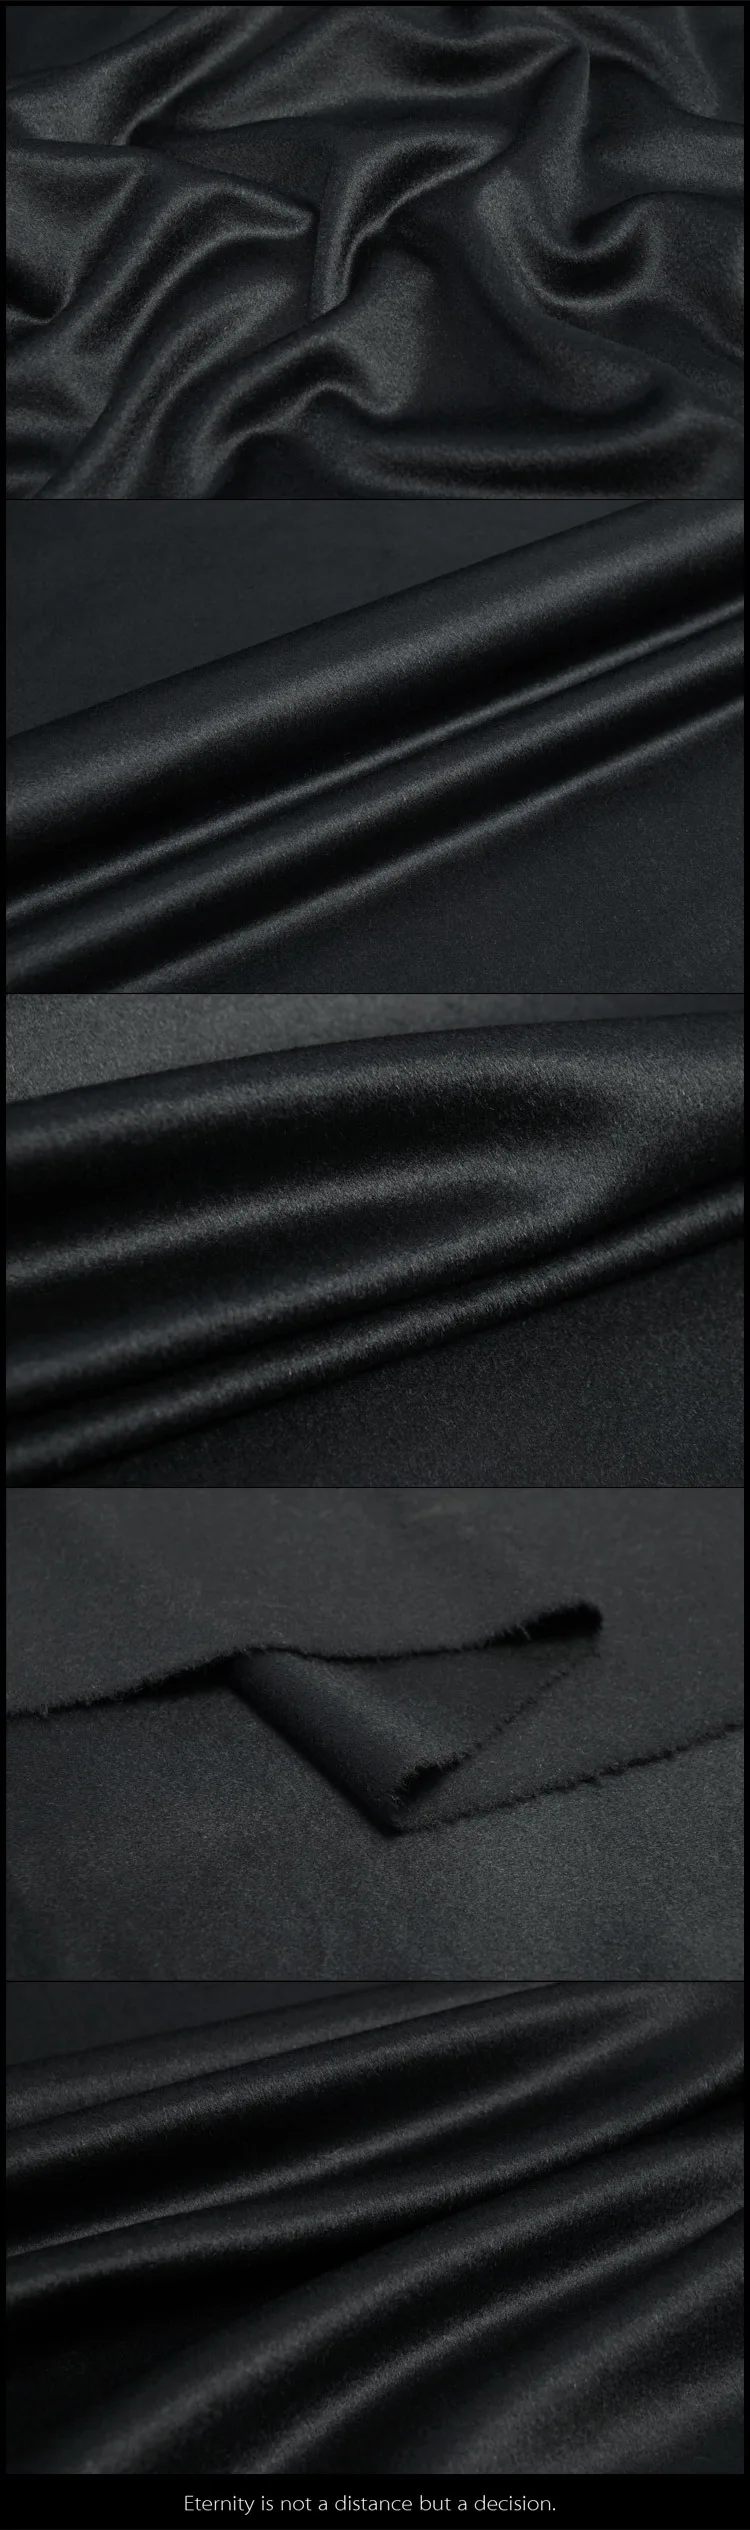 Прямые продажи с фабрики заказы в Италии односторонняя кашемировая ткань тонкий кашемир пальто костюм ткань шерсть ткань кашемир ткань